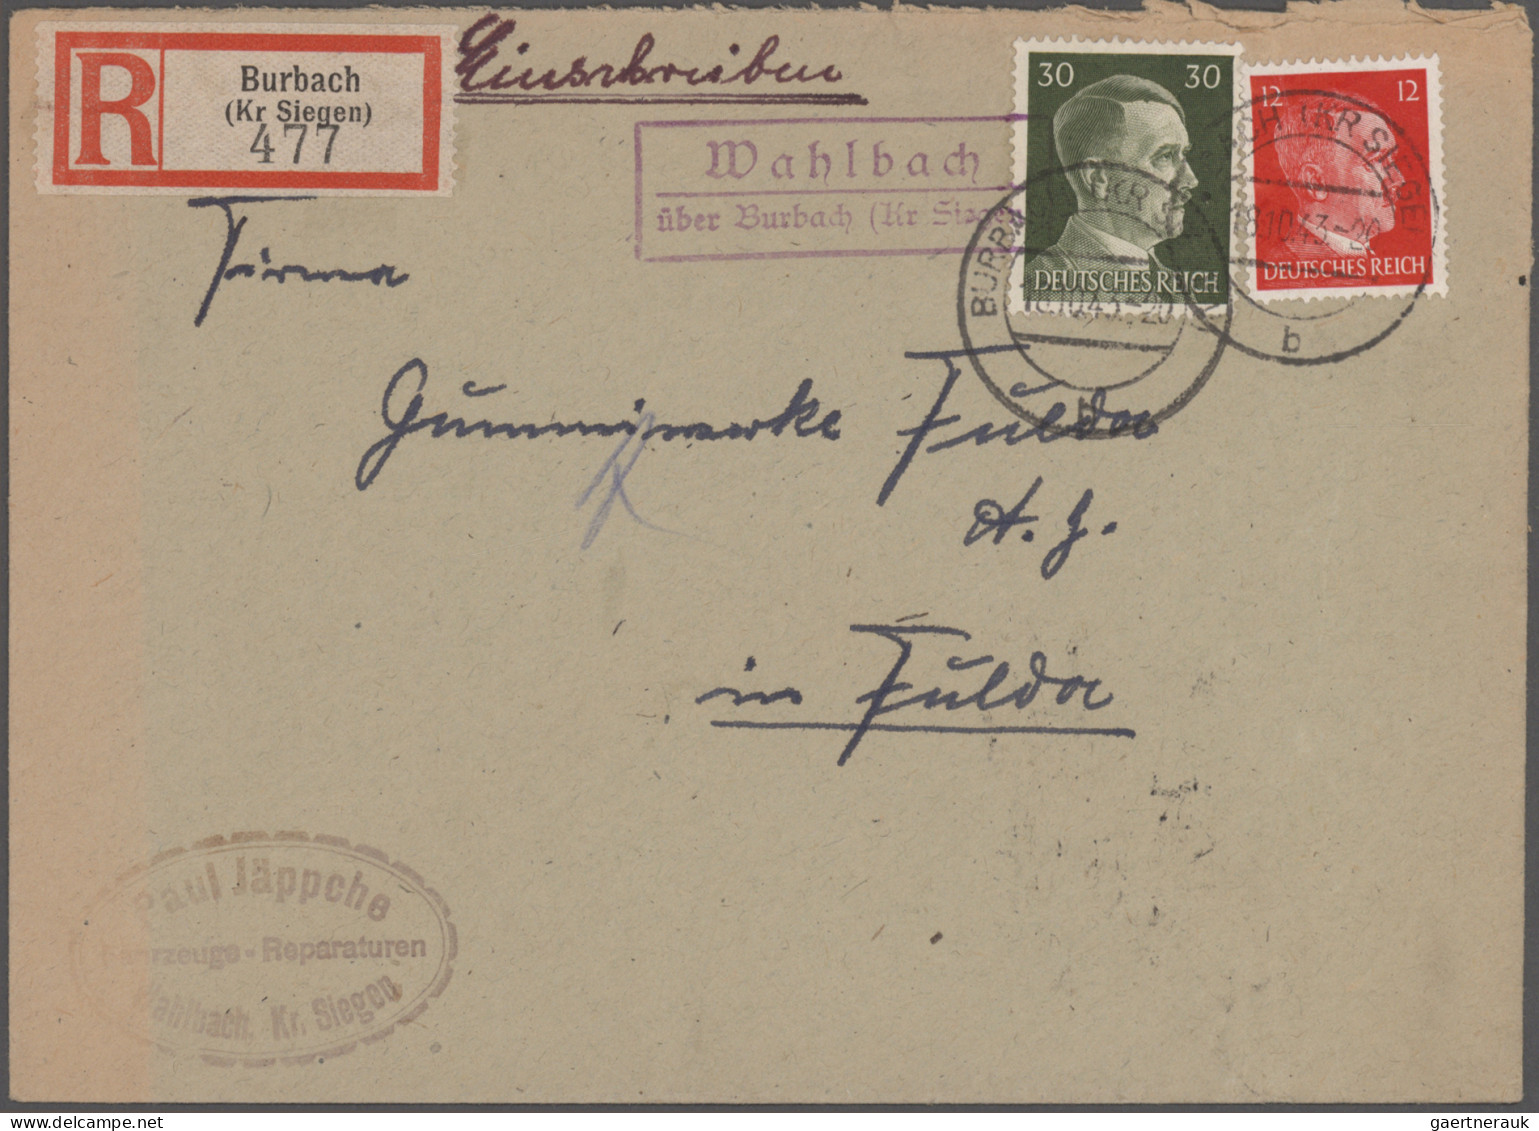 Deutsches Reich: 1872/1945, Partie von ca. 120 Briefen und Karten von Brustschil